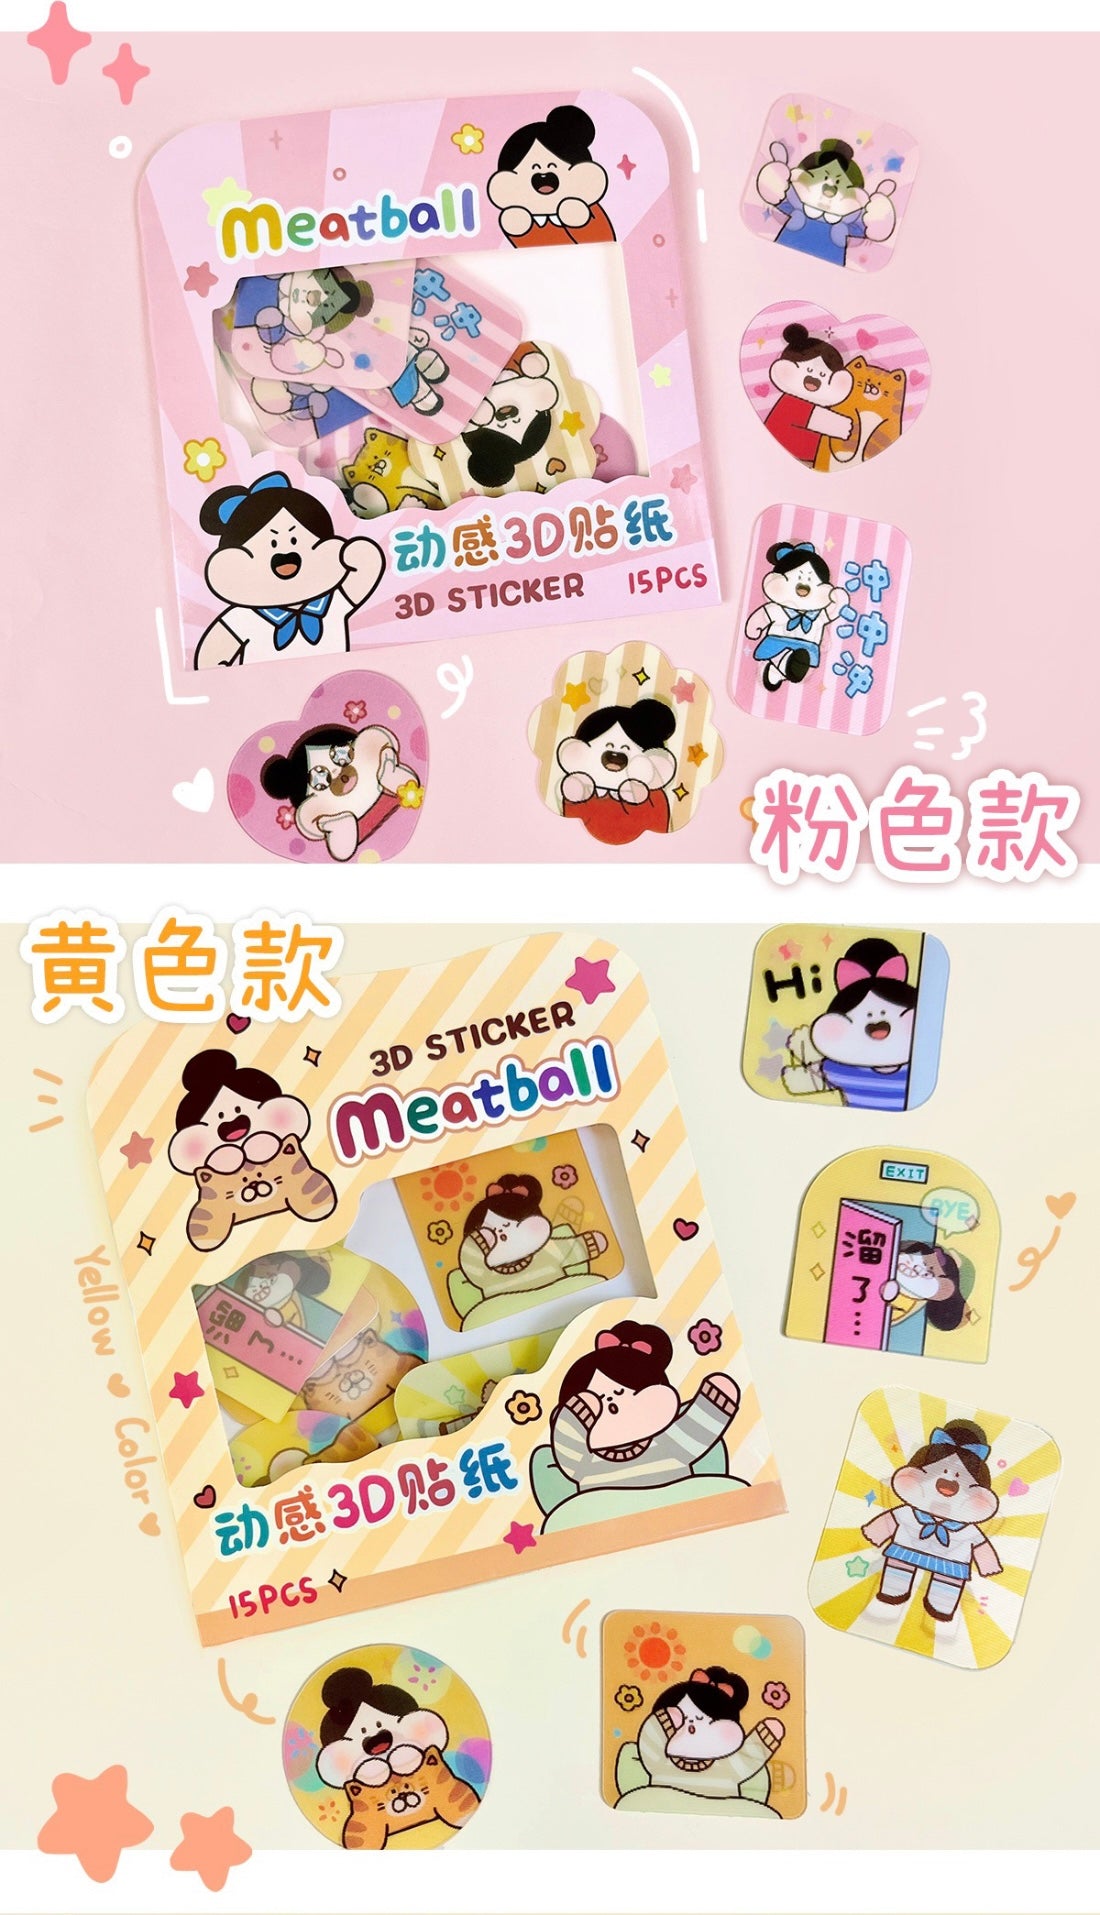 Meatball 3D sticker pack